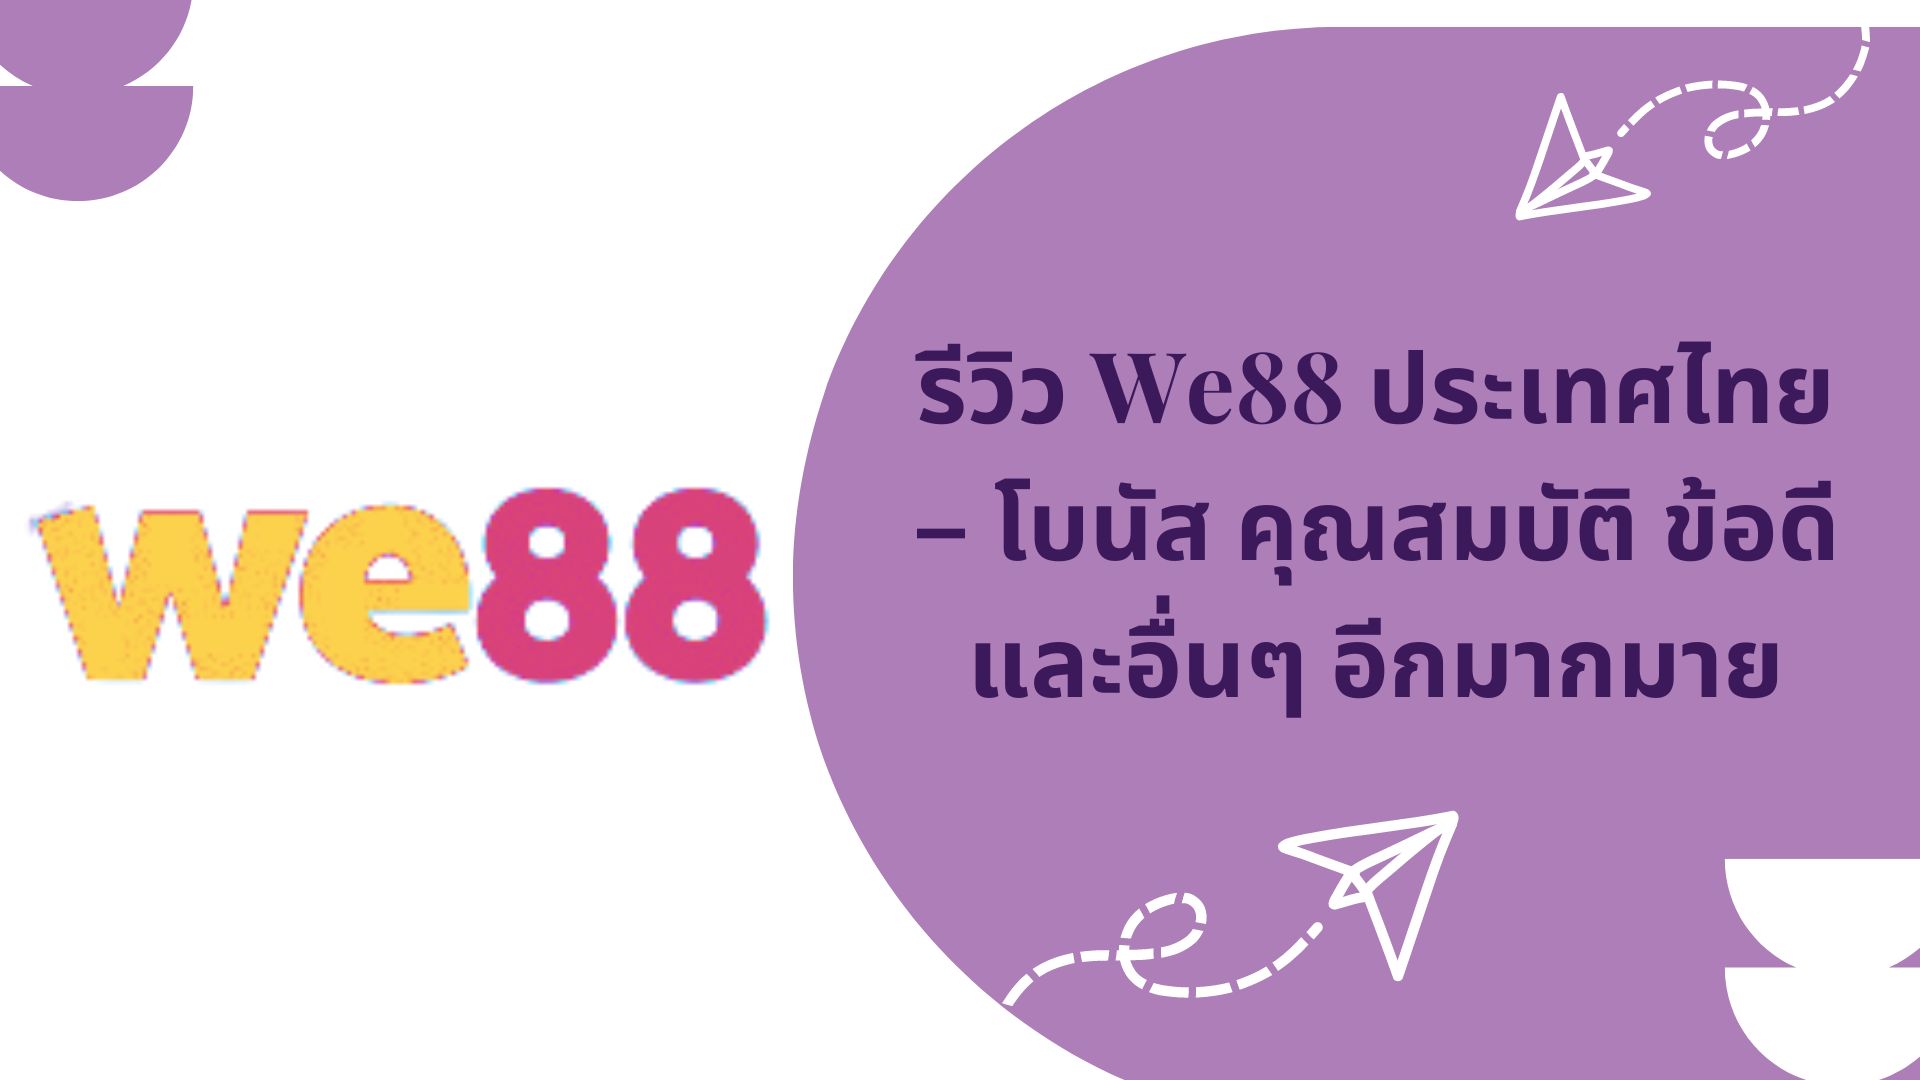 รีวิว We88 ประเทศไทย